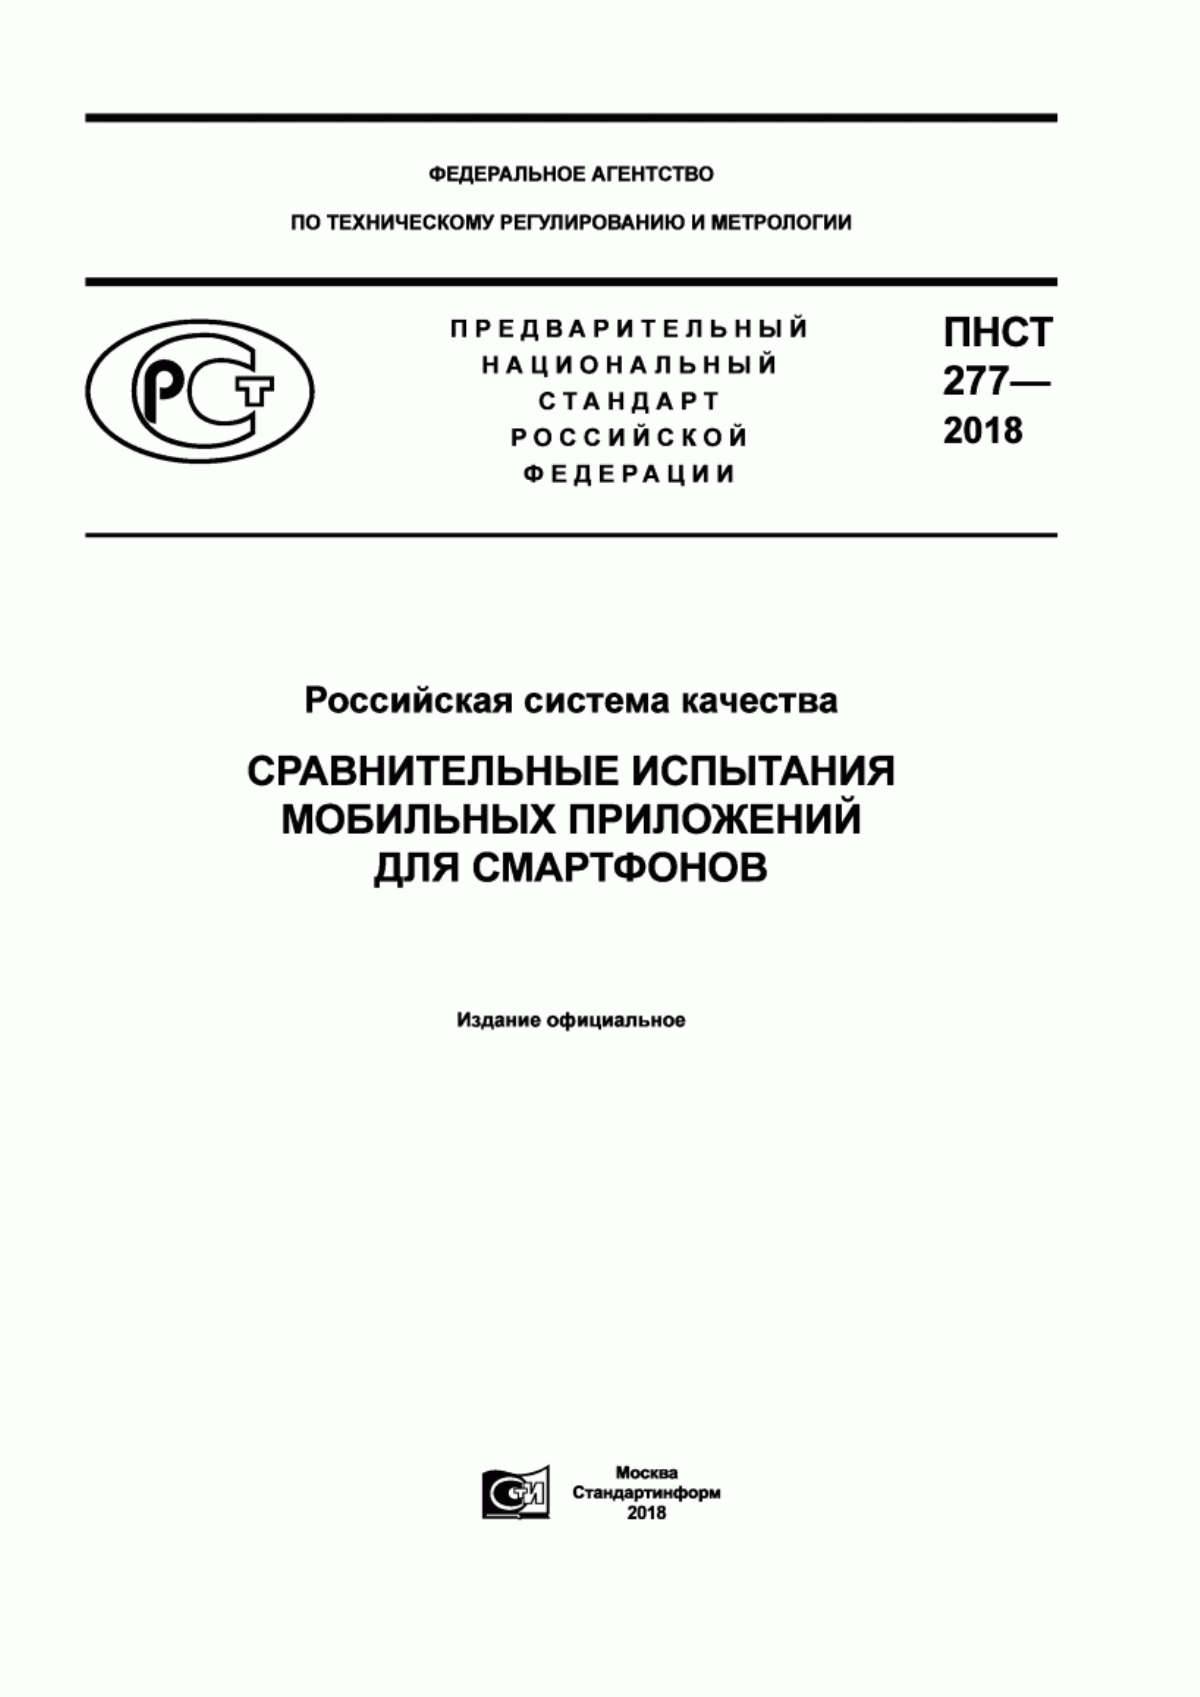 ПНСТ 277-2018 Российская система качества. Сравнительные испытания мобильных приложений для смартфонов